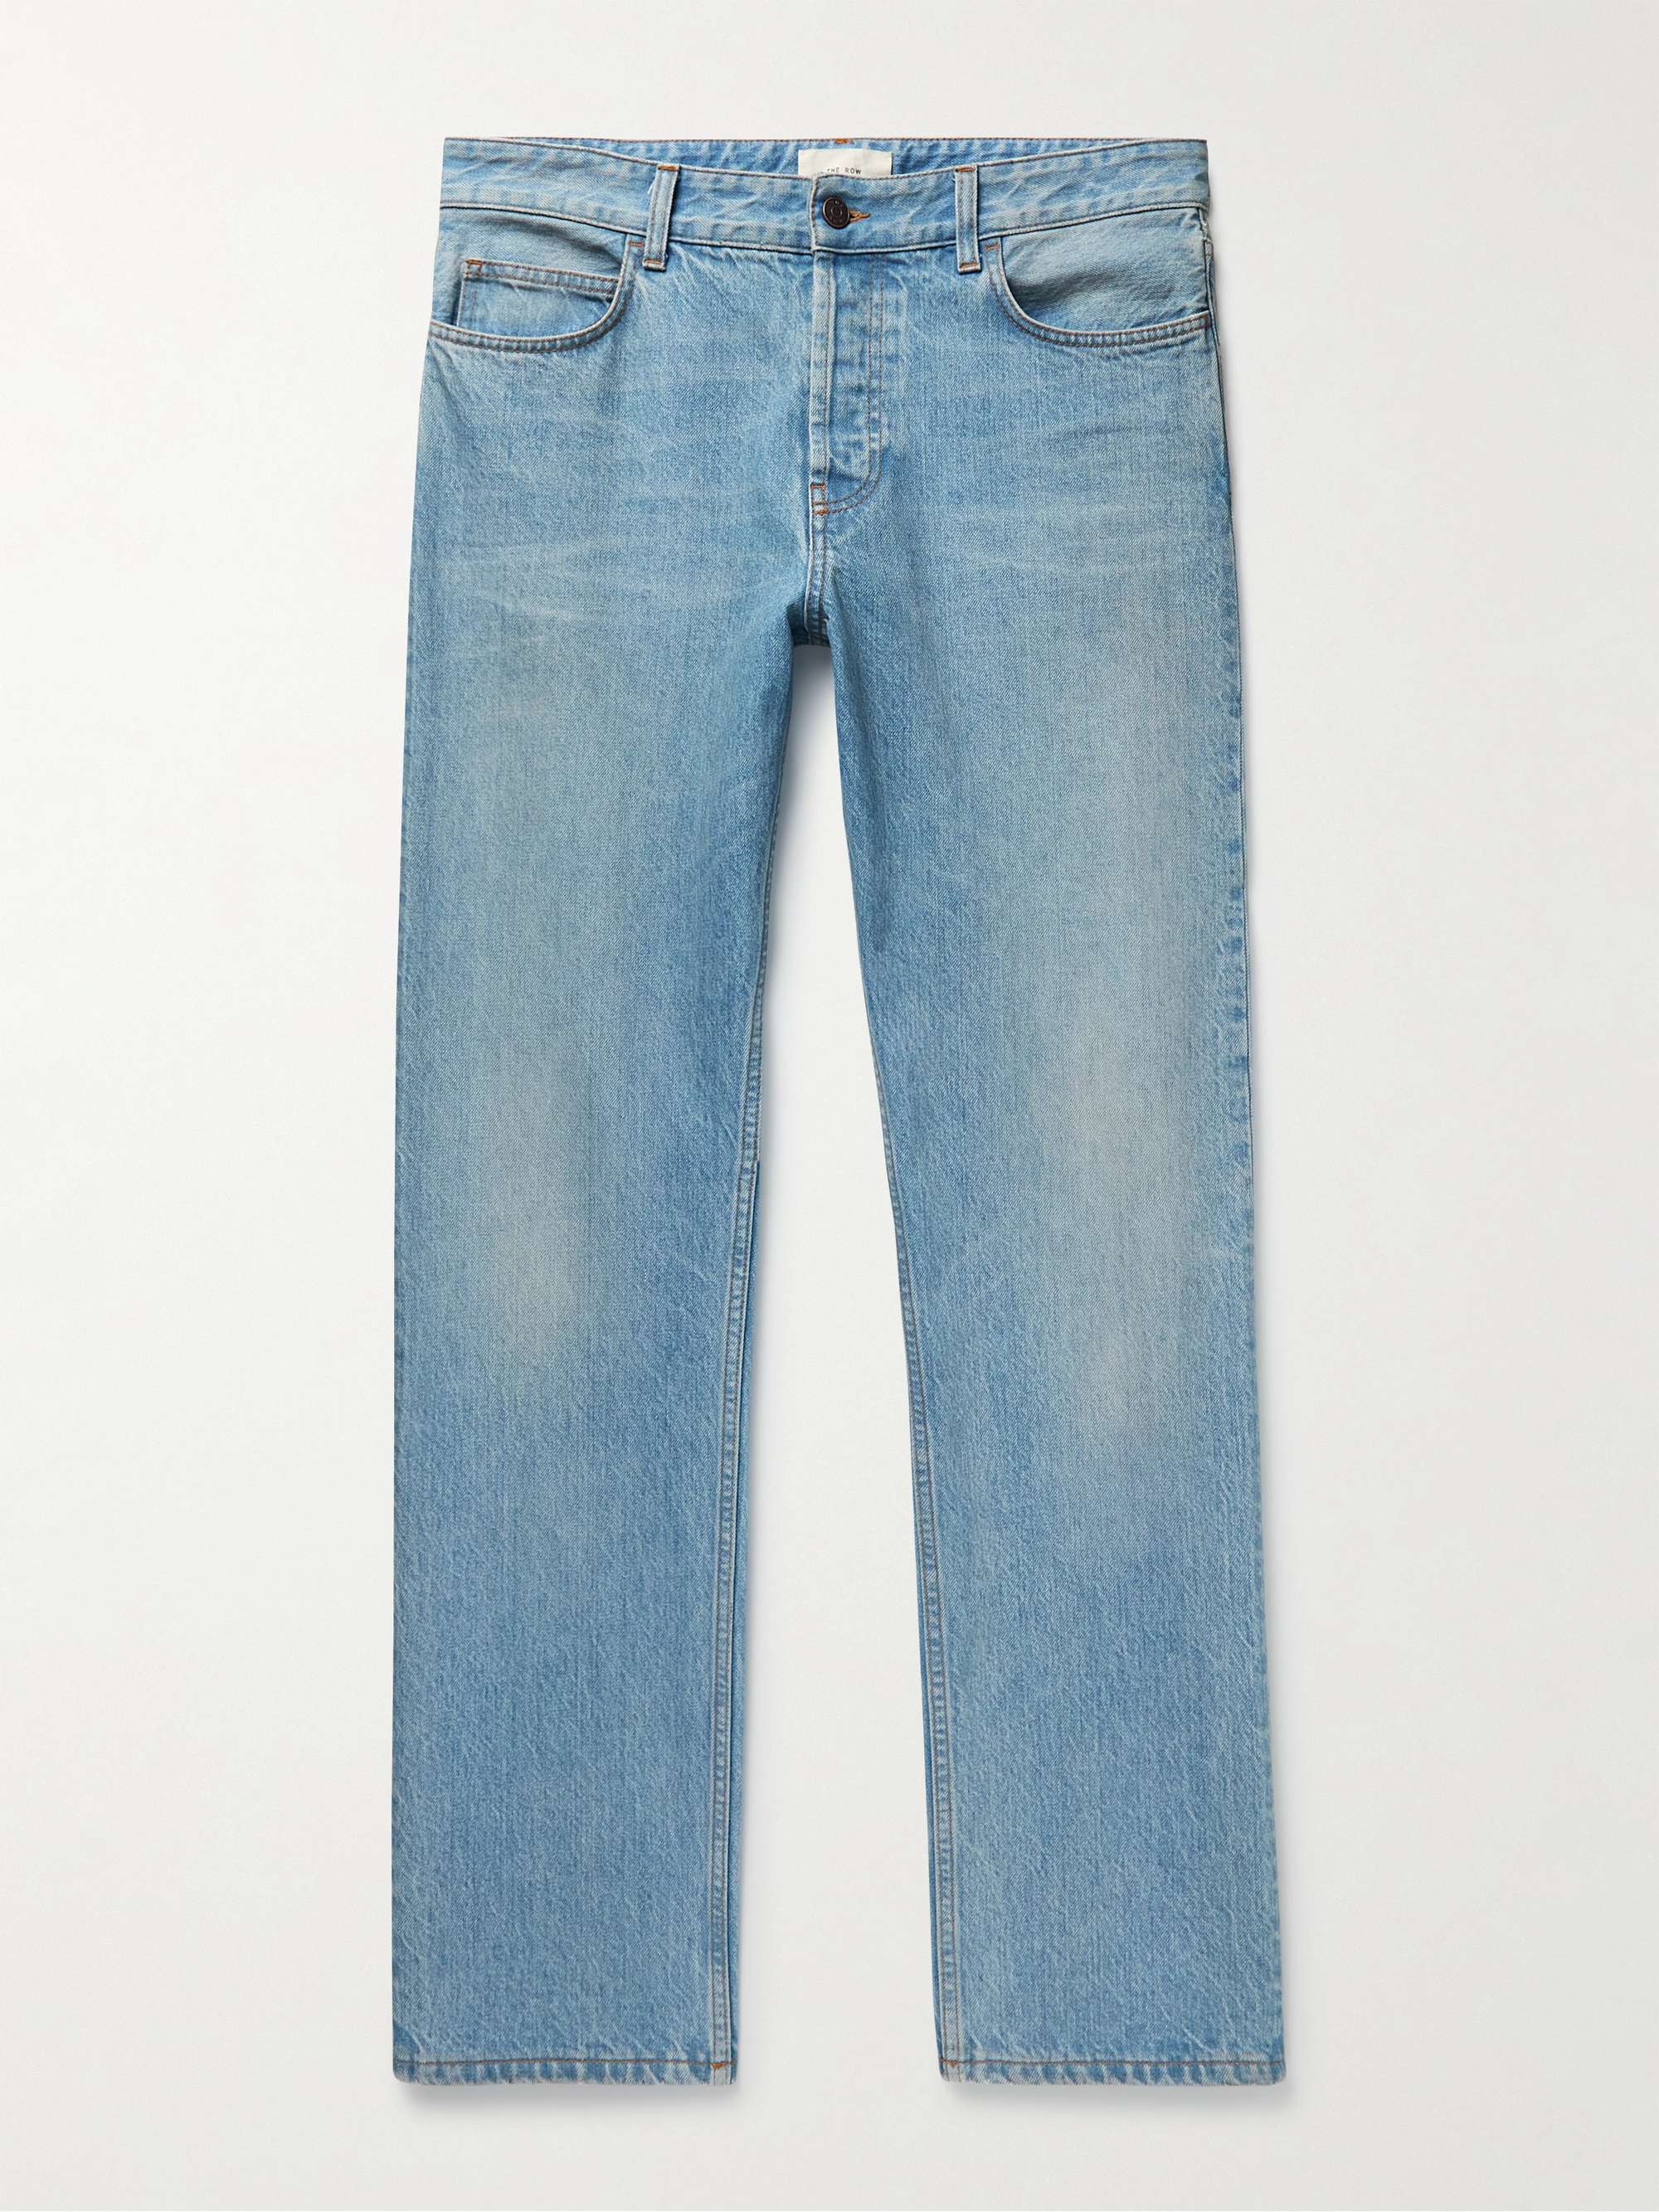 THE ROW Carlisle Straight-Leg Jeans for Men | MR PORTER